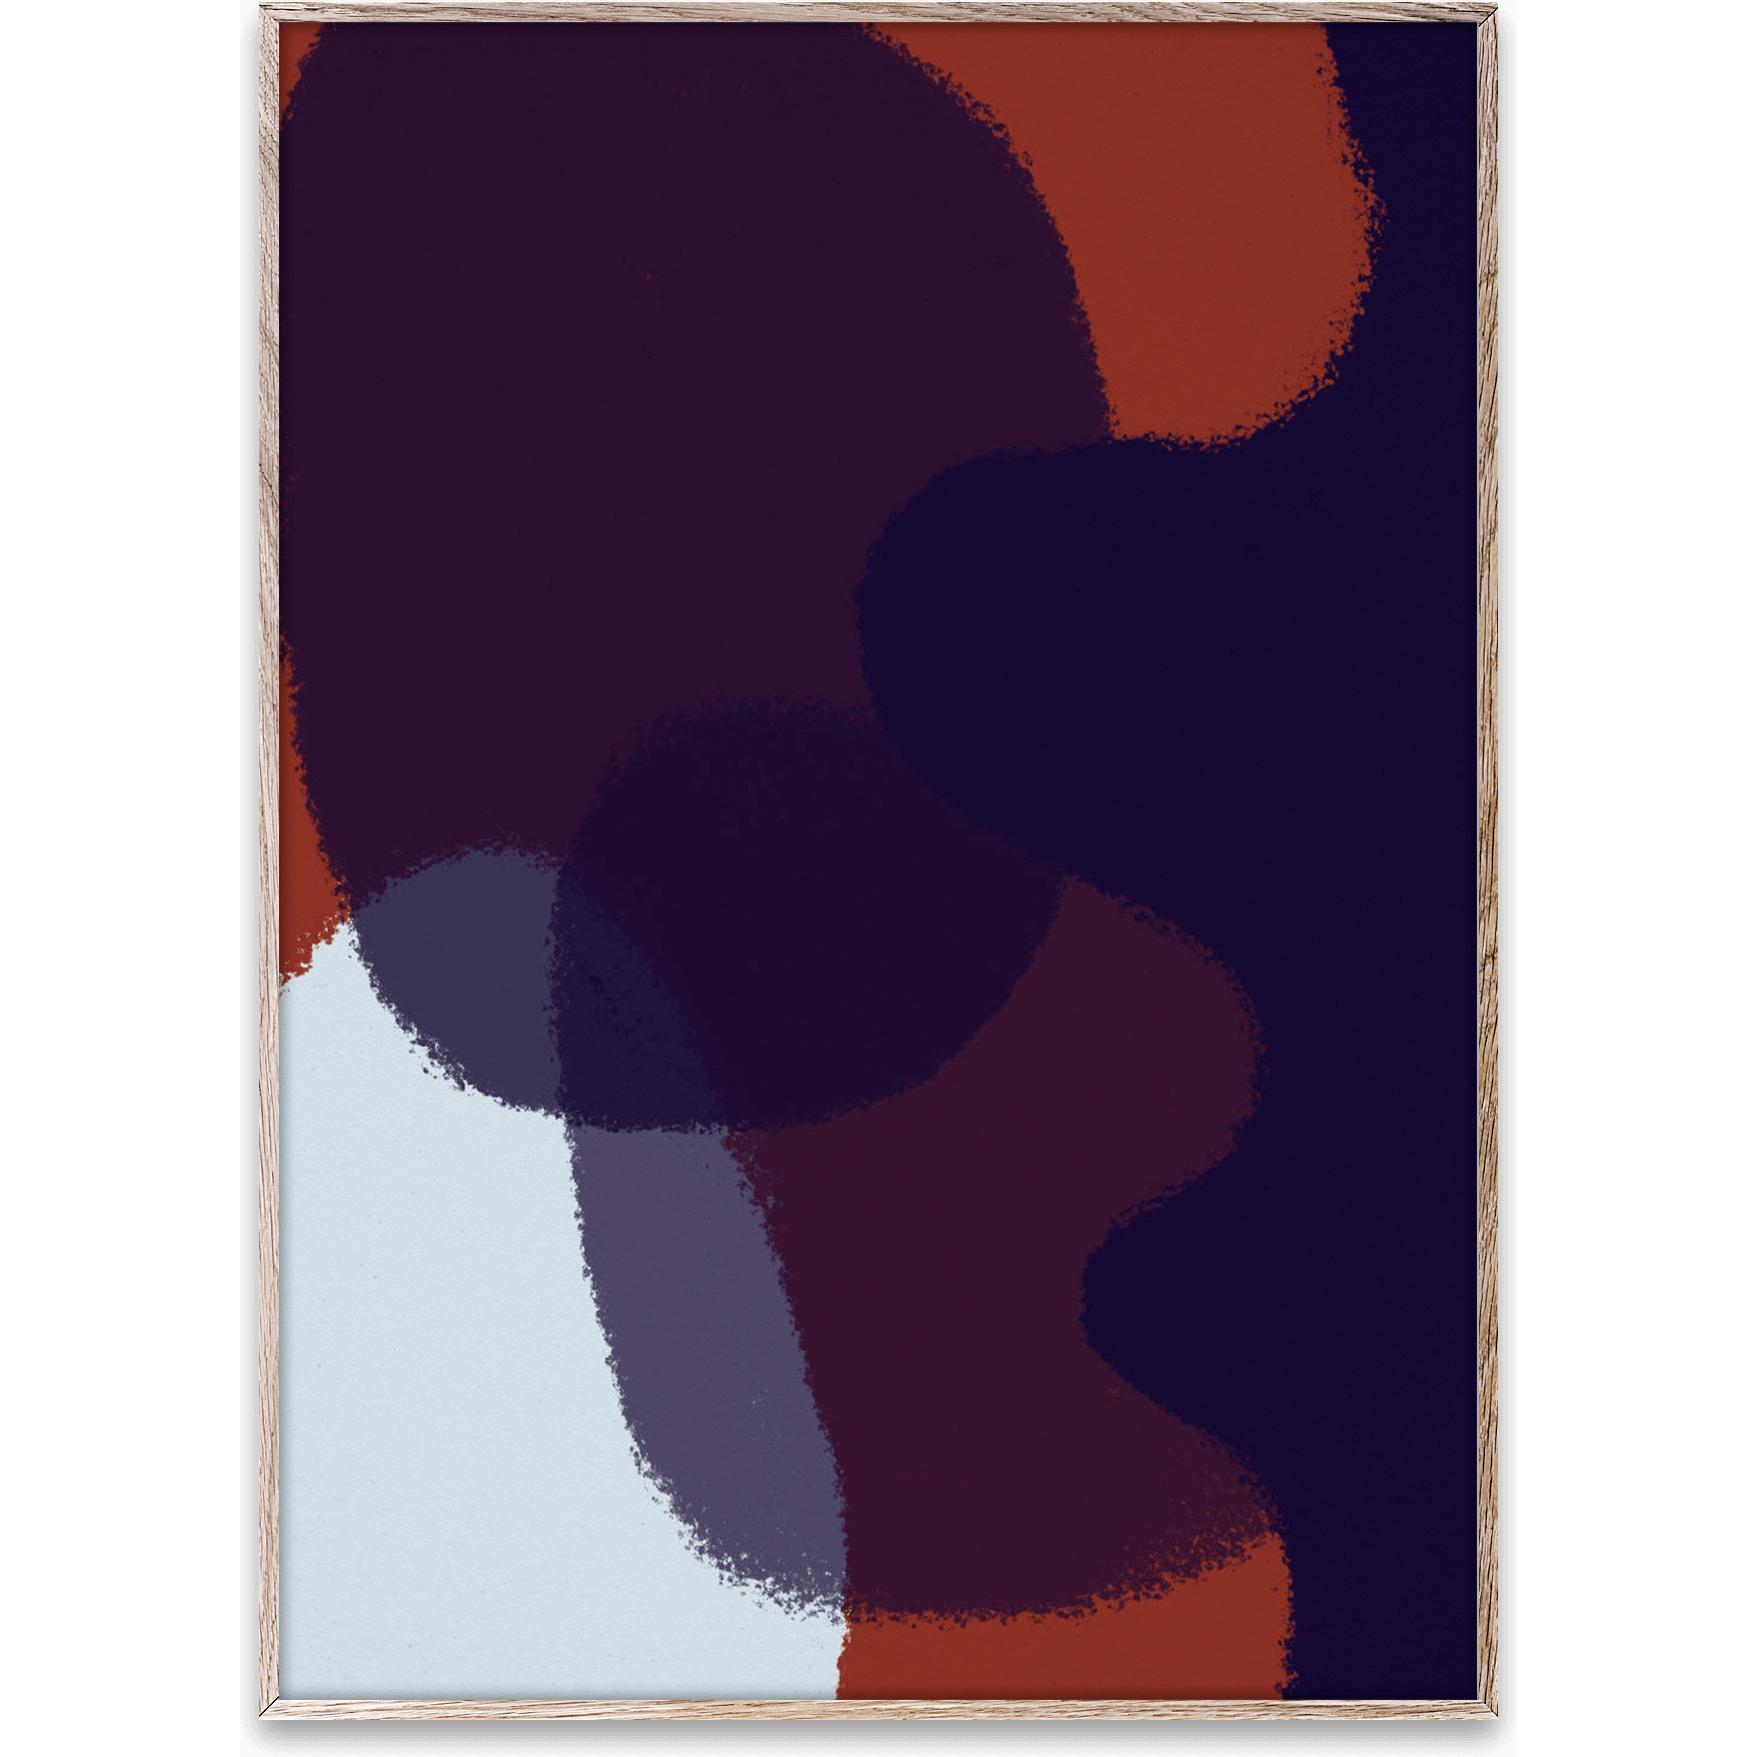 Pappírs sameiginlegt blekkorn 03 veggspjald, 50x70 cm